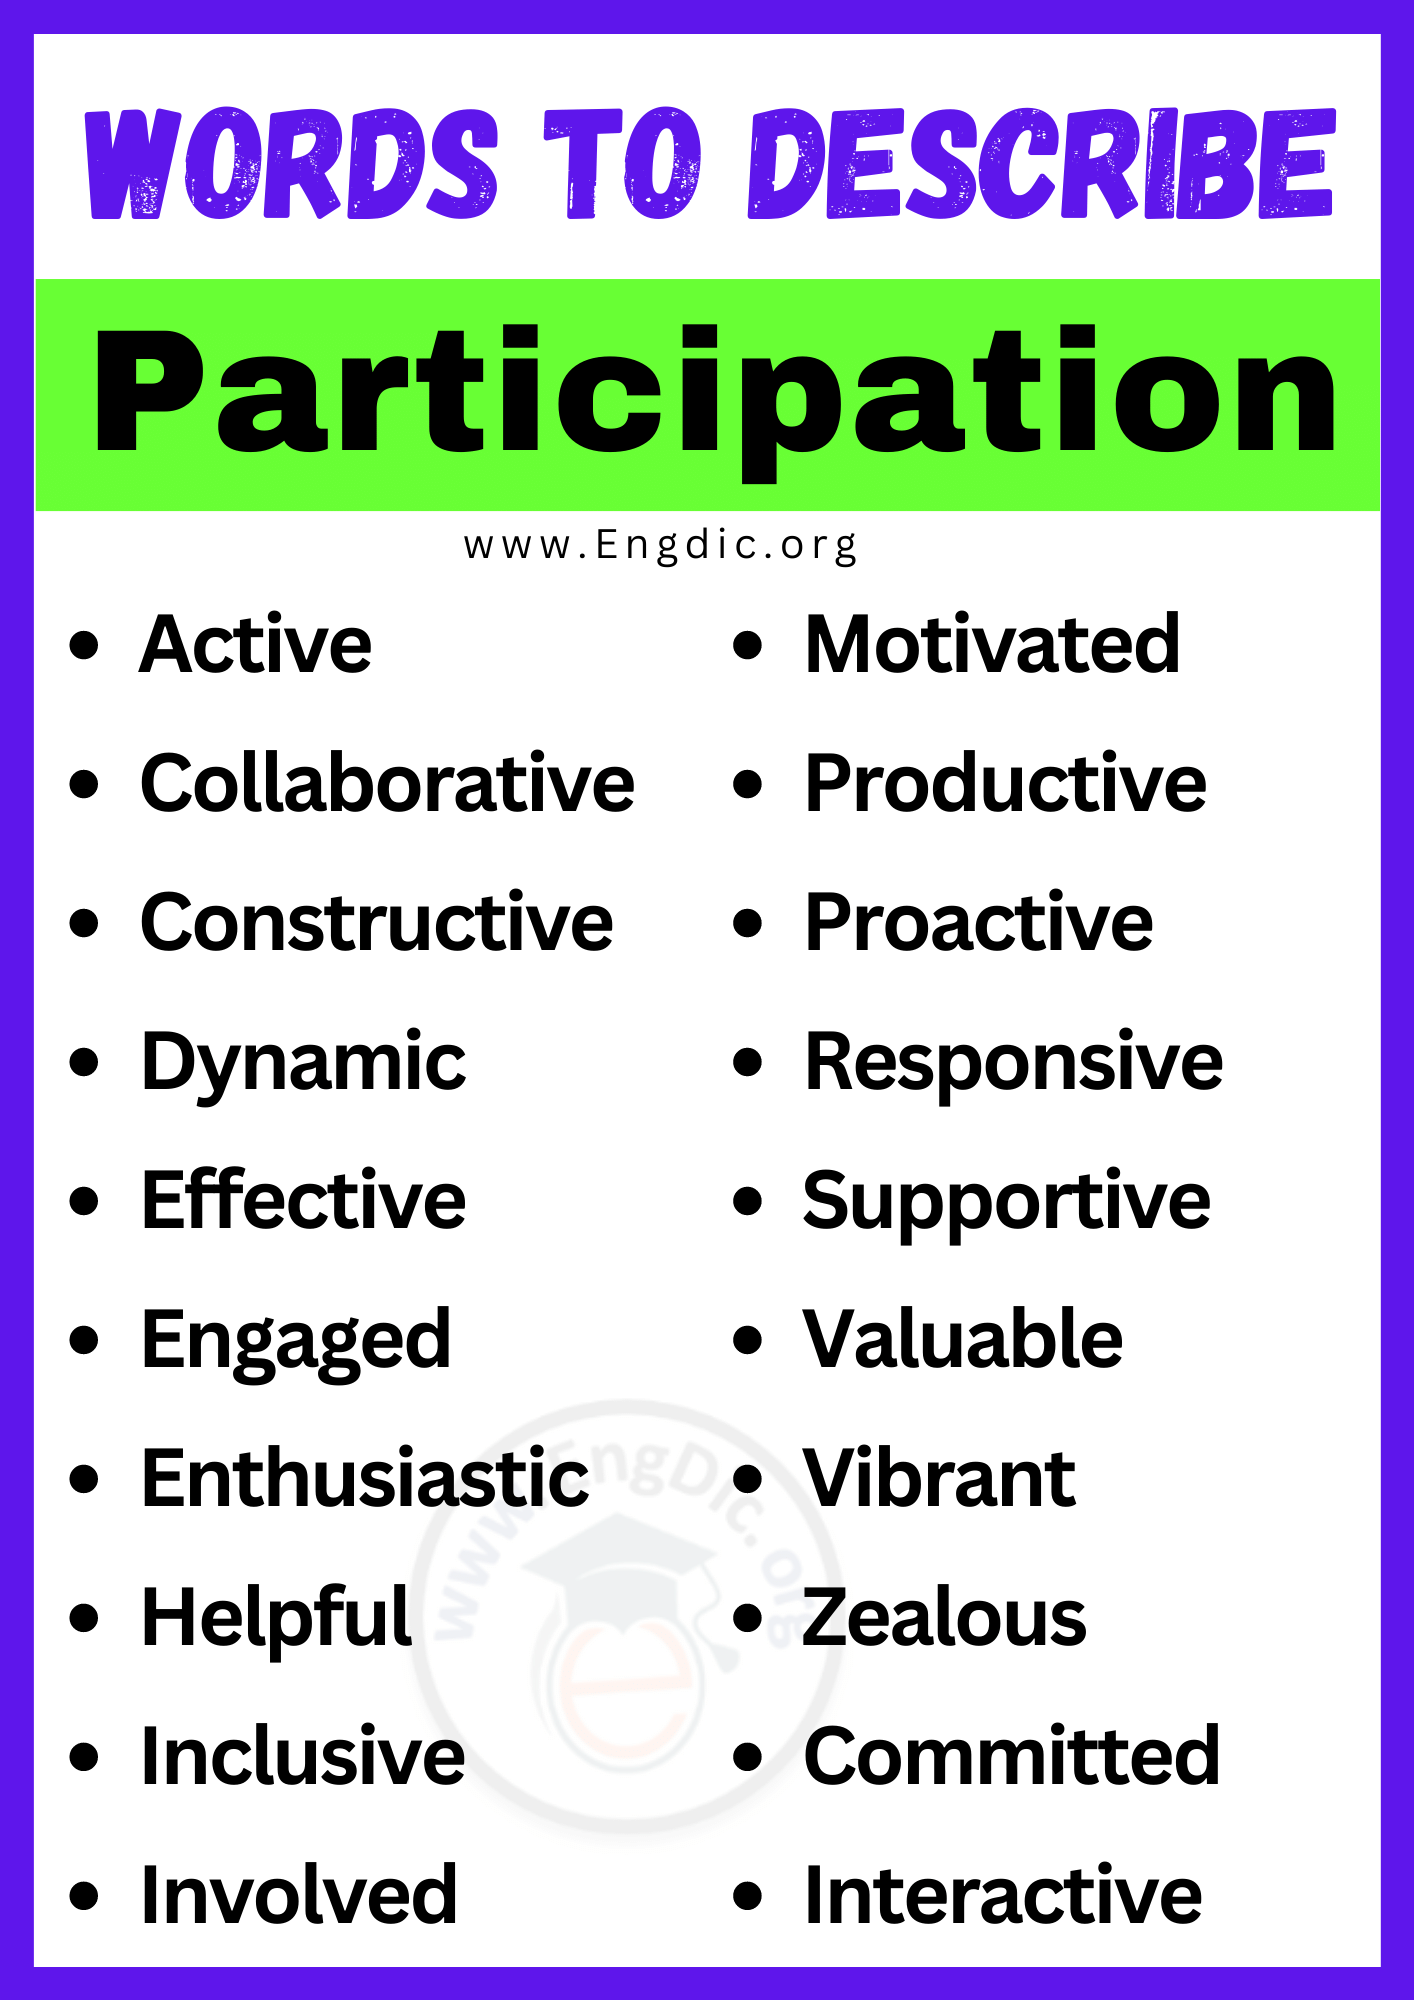 Words to Describe Participation